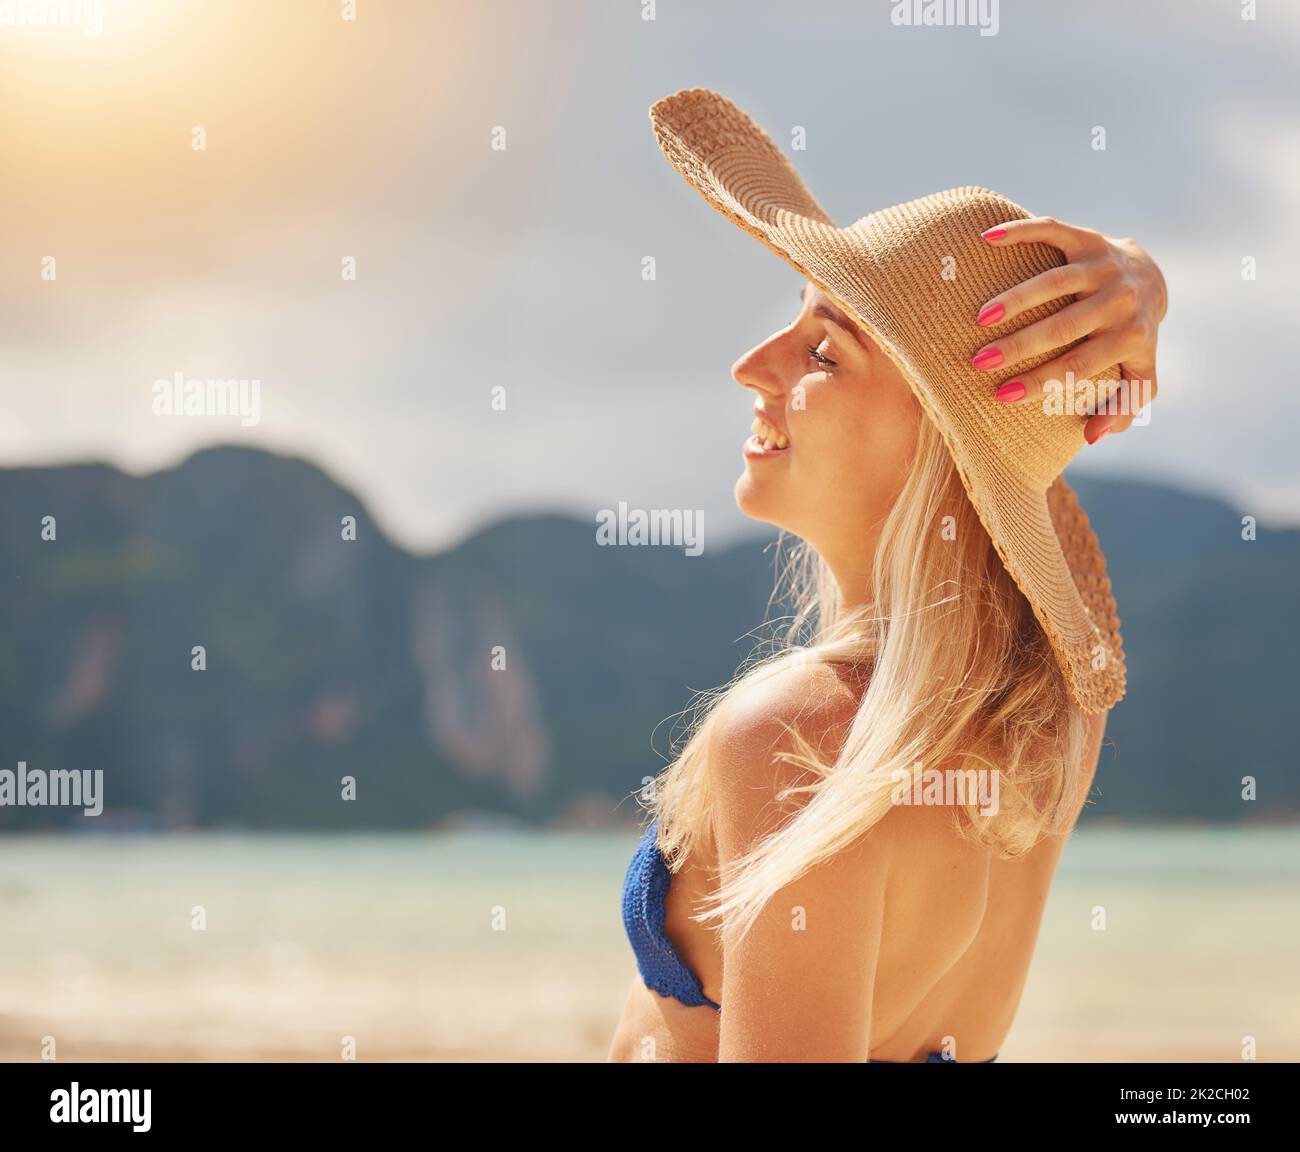 Genießen Sie die Sonne. Aufnahme einer glücklichen jungen Frau in einem Bikini, der sich an einem tropischen Strand entspannt. Stockfoto